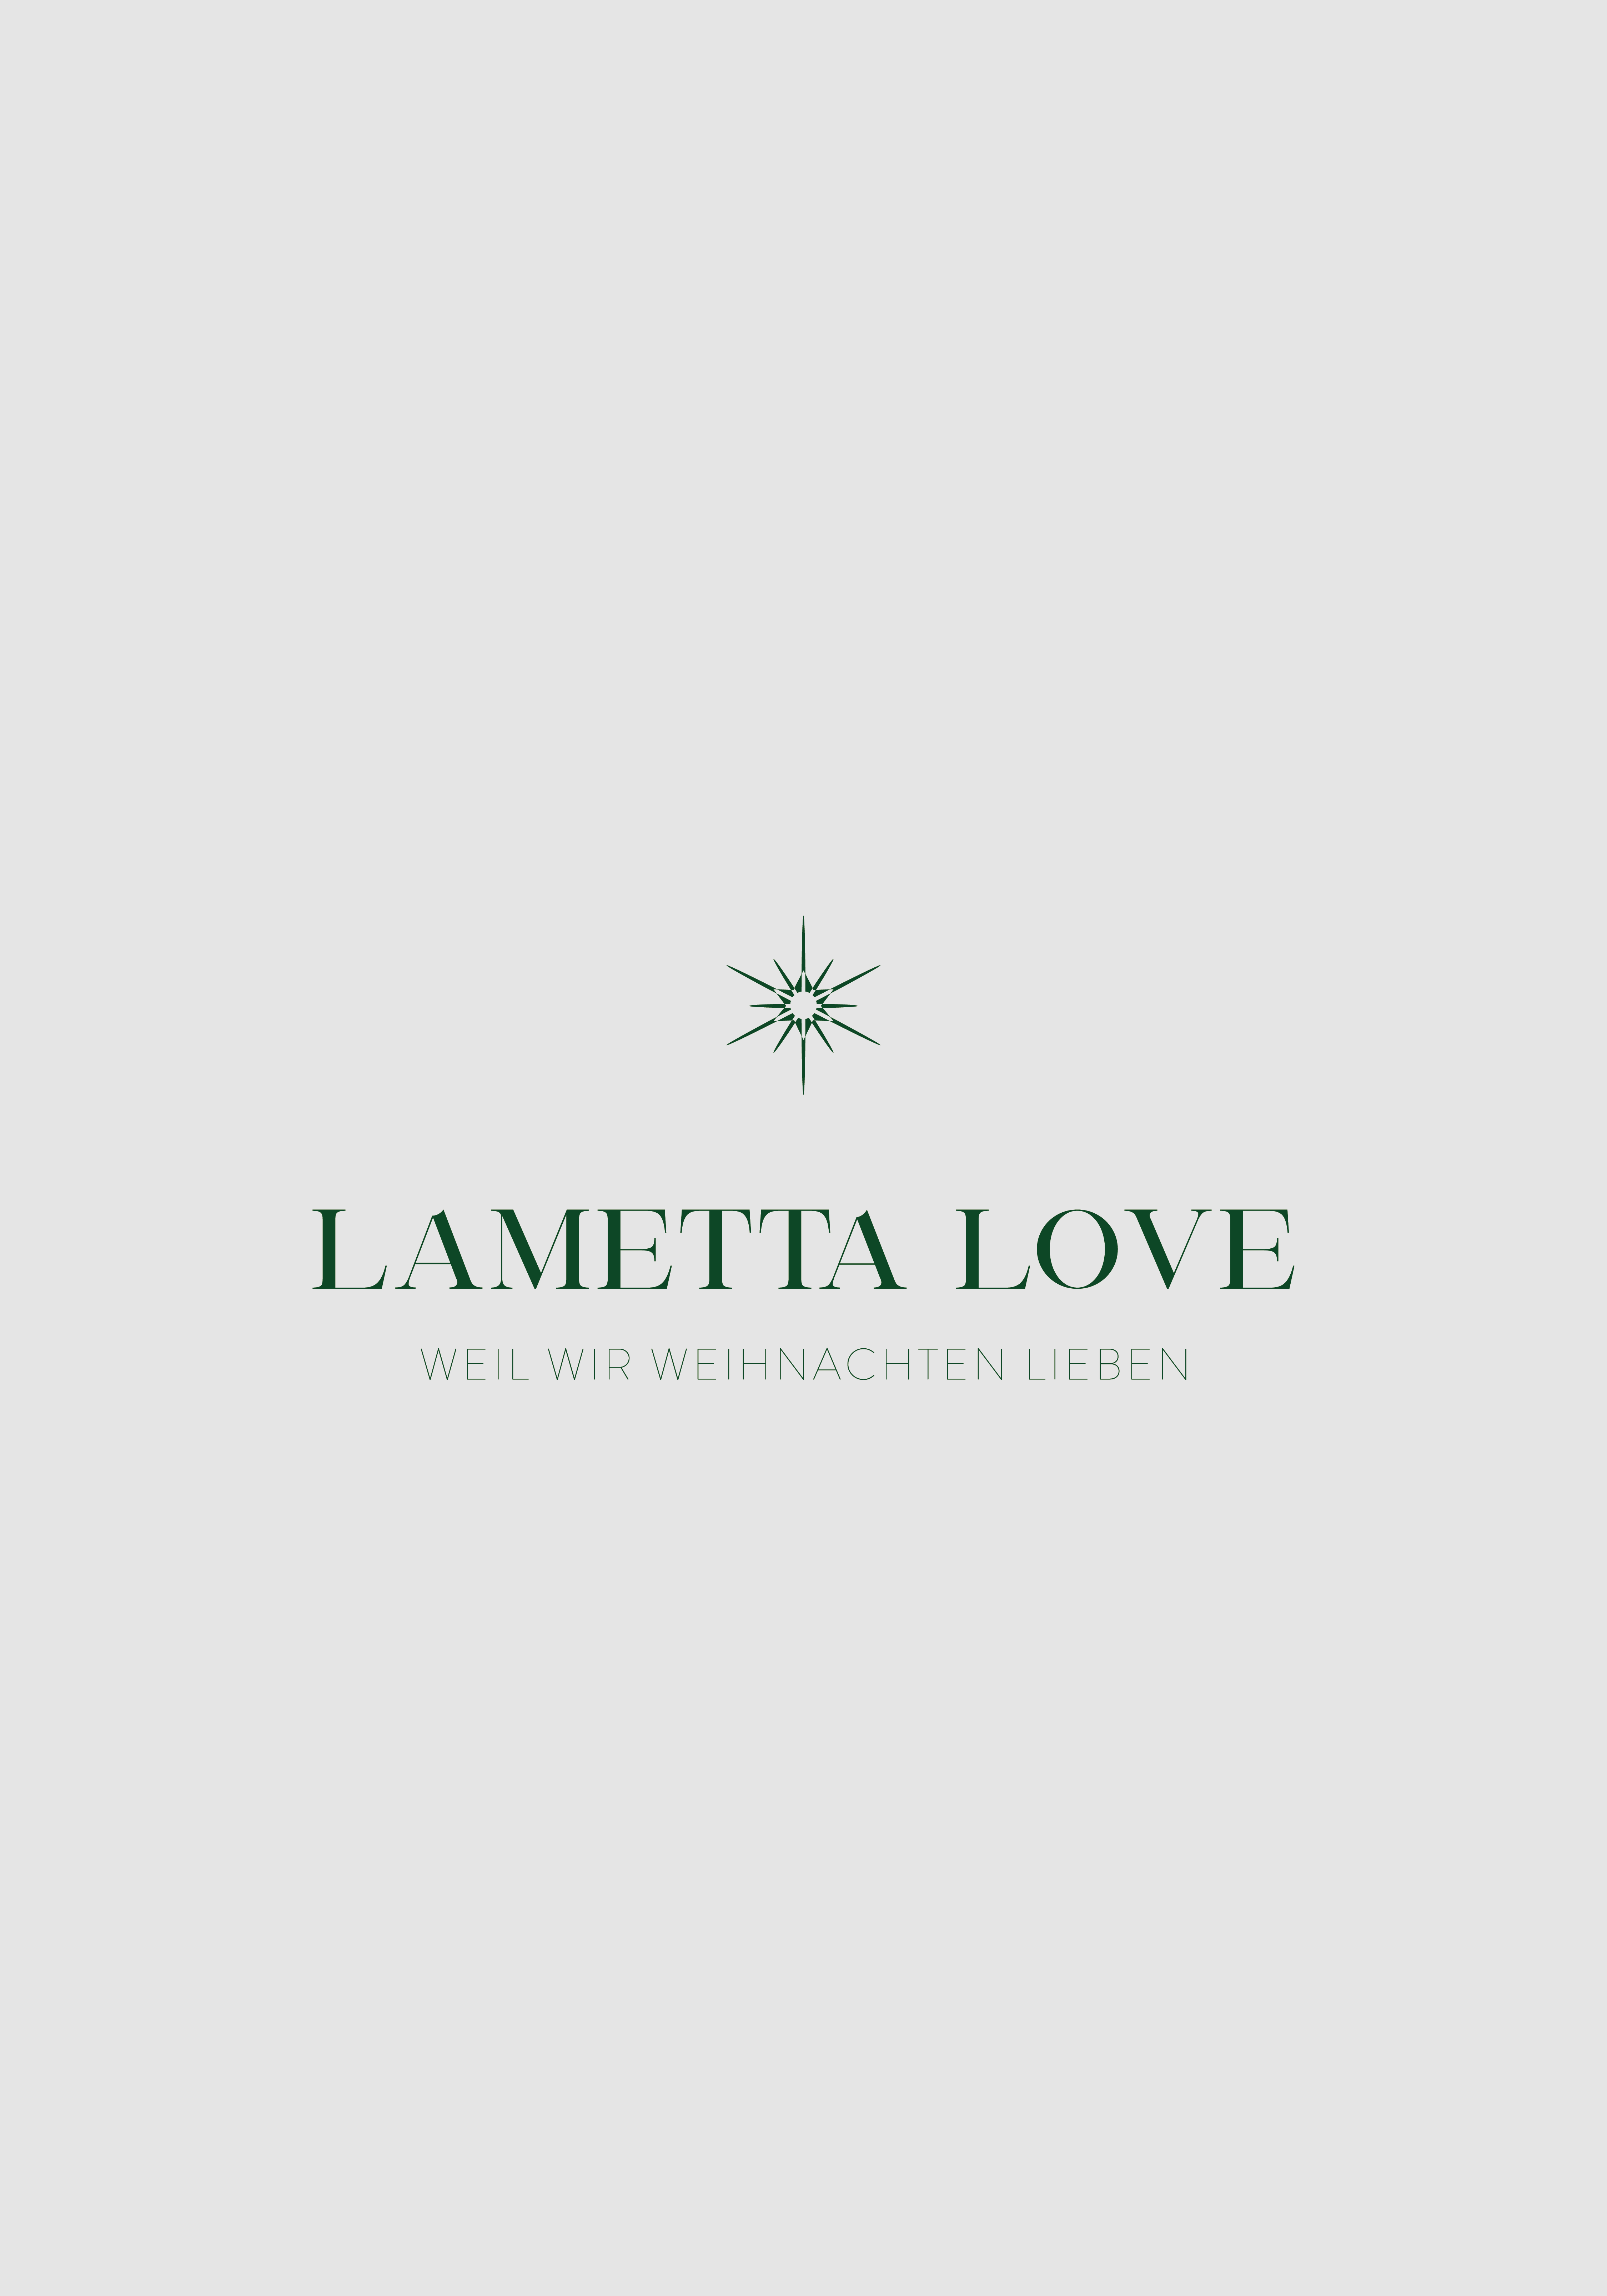 Das Logo der Firma LAMETTA LOVE, das durch Mediendesign entstand